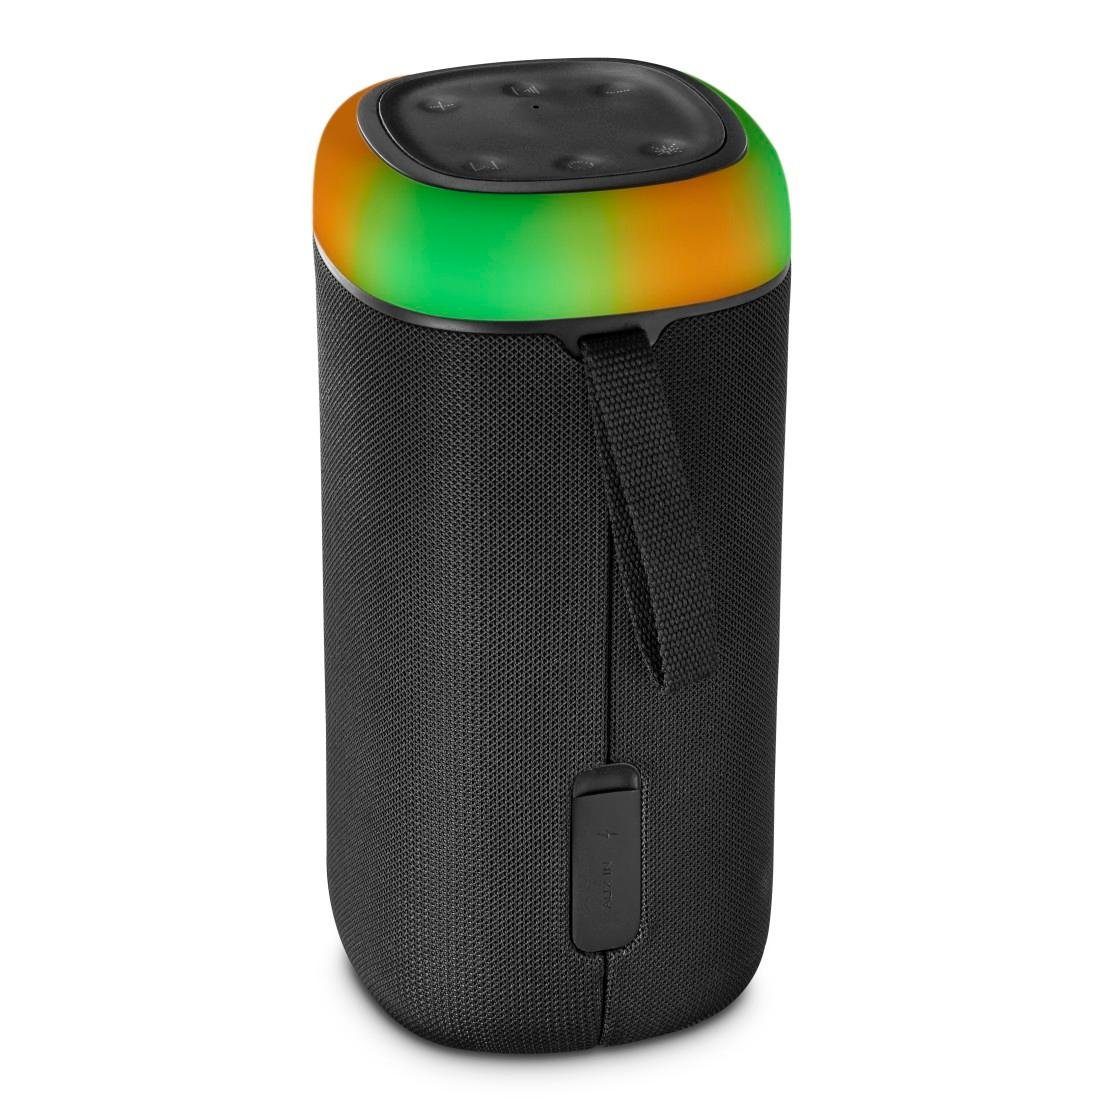 Sound) Bluetooth Box 360ᵒ Sound Shine Bass Bluetooth-Lautsprecher Xtra spritzwassergeschützt (Freisprechanlage,Xtra Hama schwarz Bass,360ᵒ LED 2.0